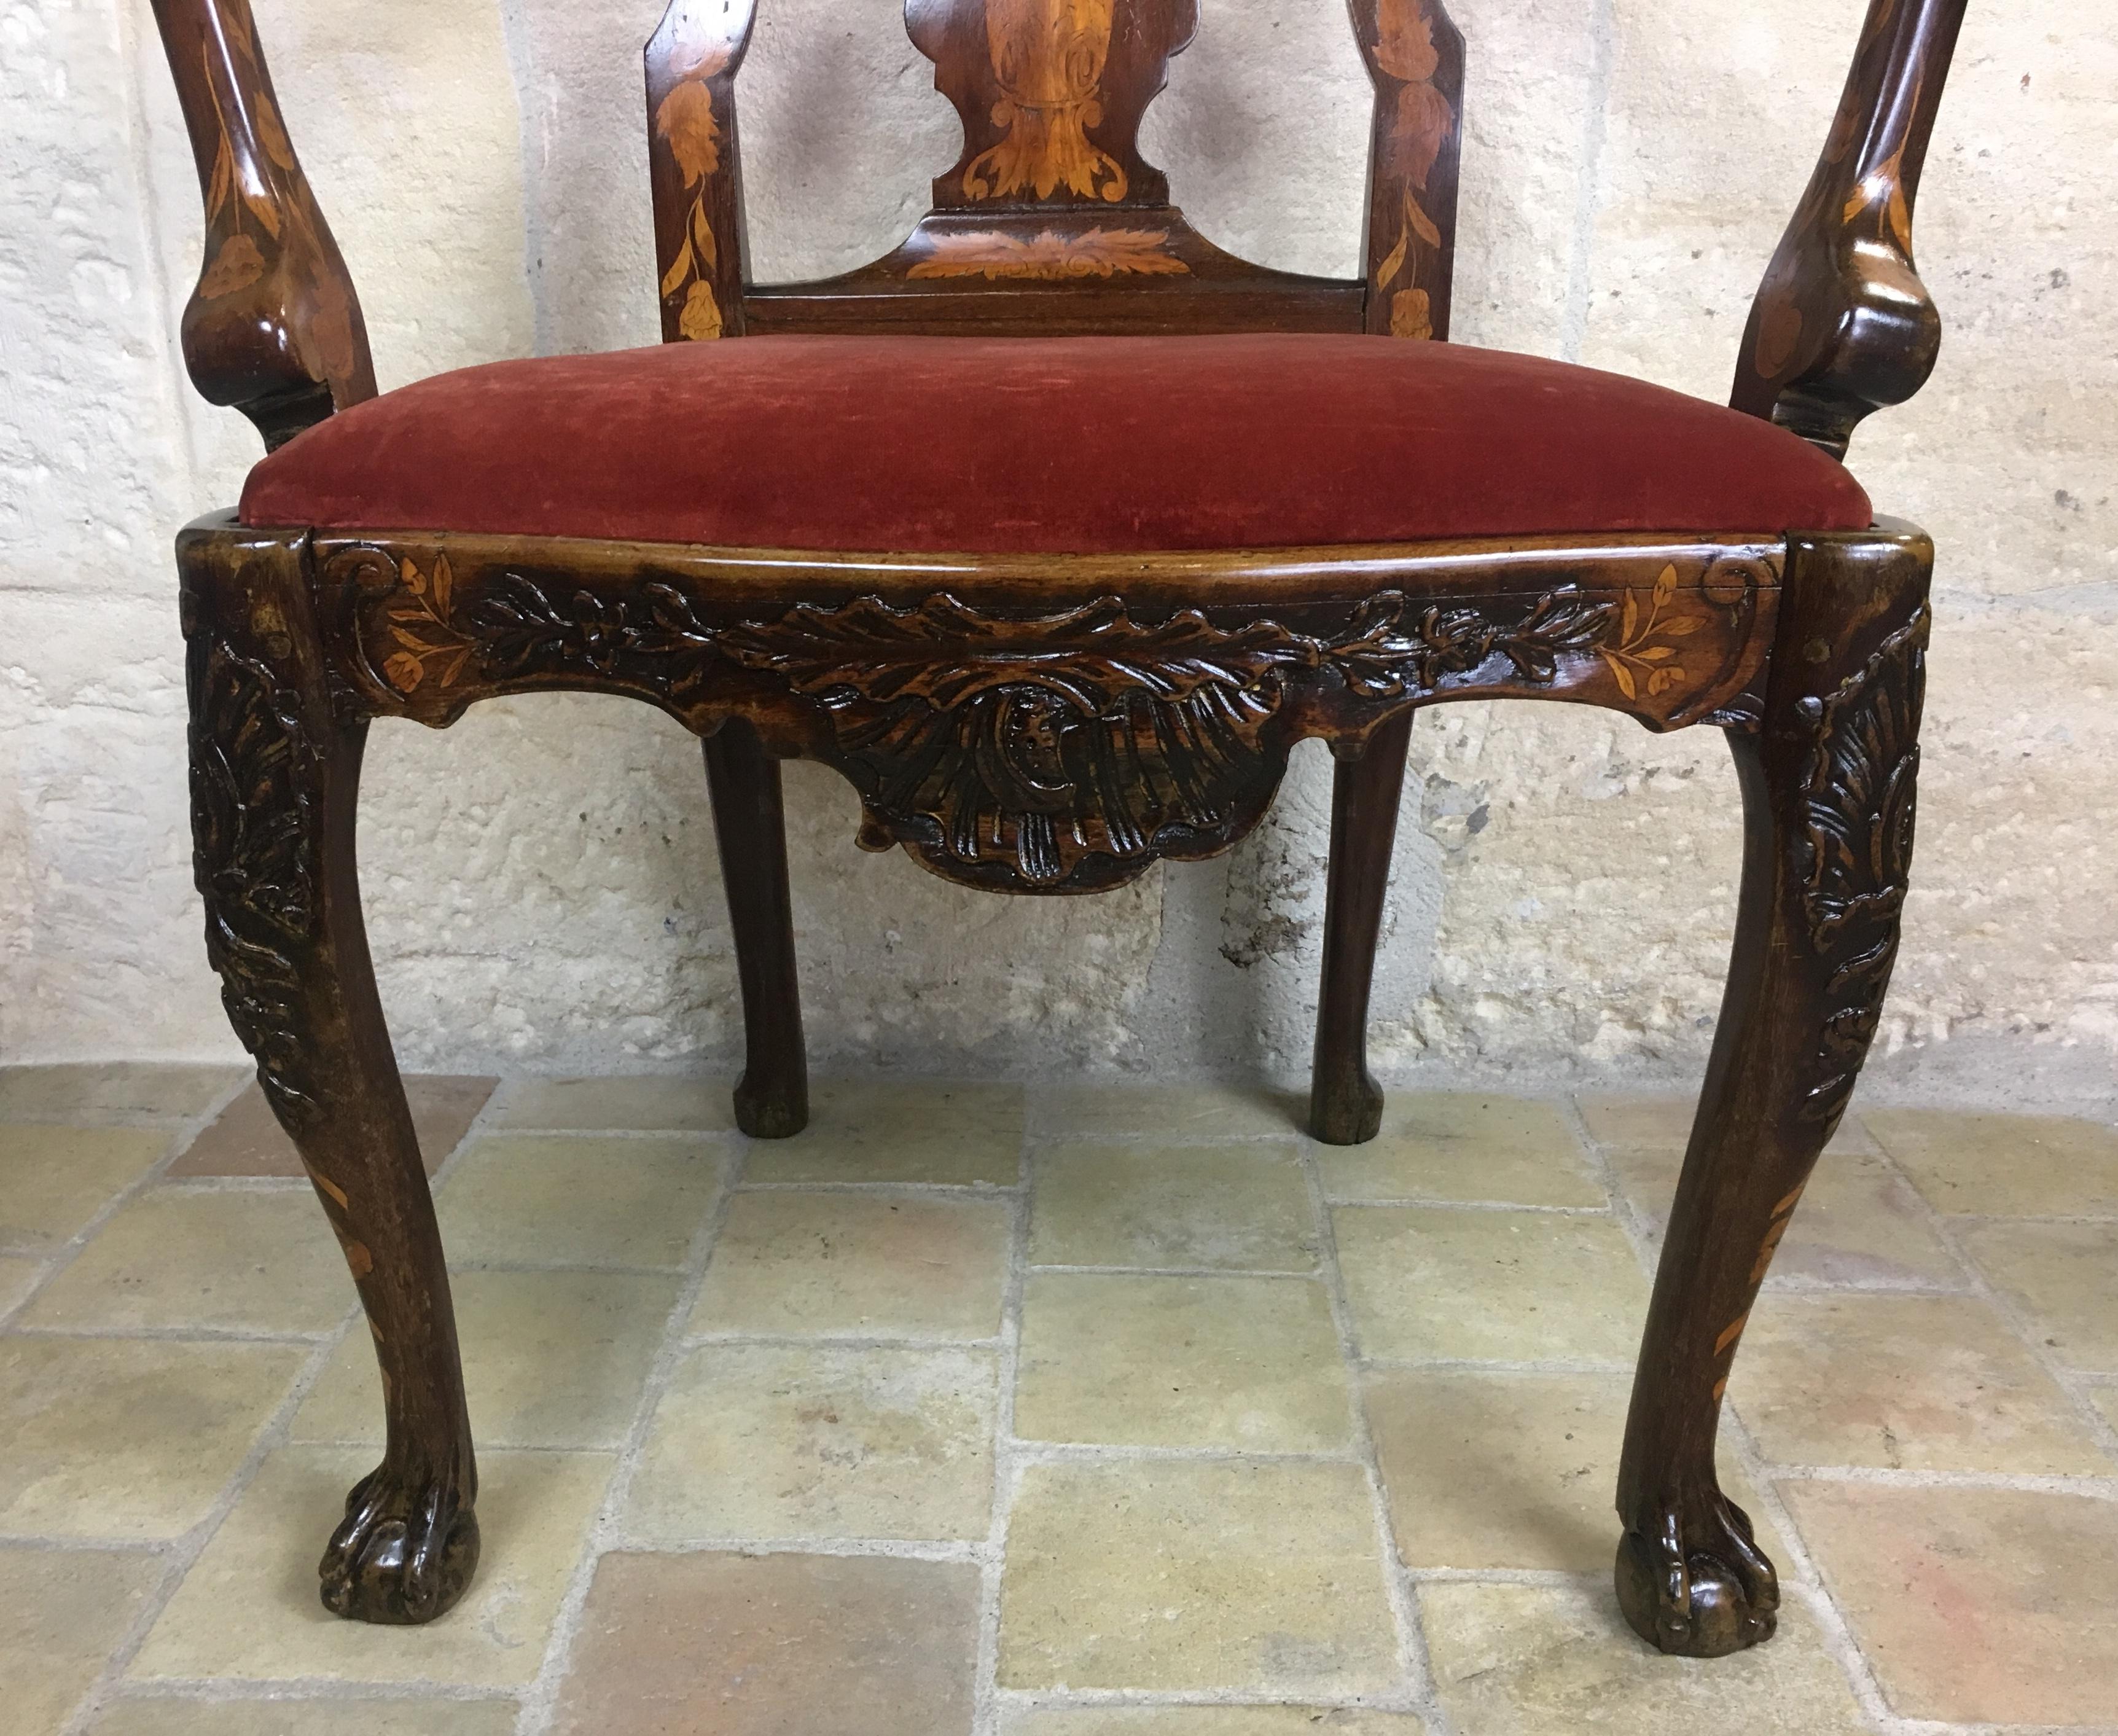 Niederländischer Sessel aus Nussbaum und Palisanderholz aus dem 18. Jahrhundert, außergewöhnliche Intarsienarbeit und Schnitzerei (18. Jahrhundert und früher)